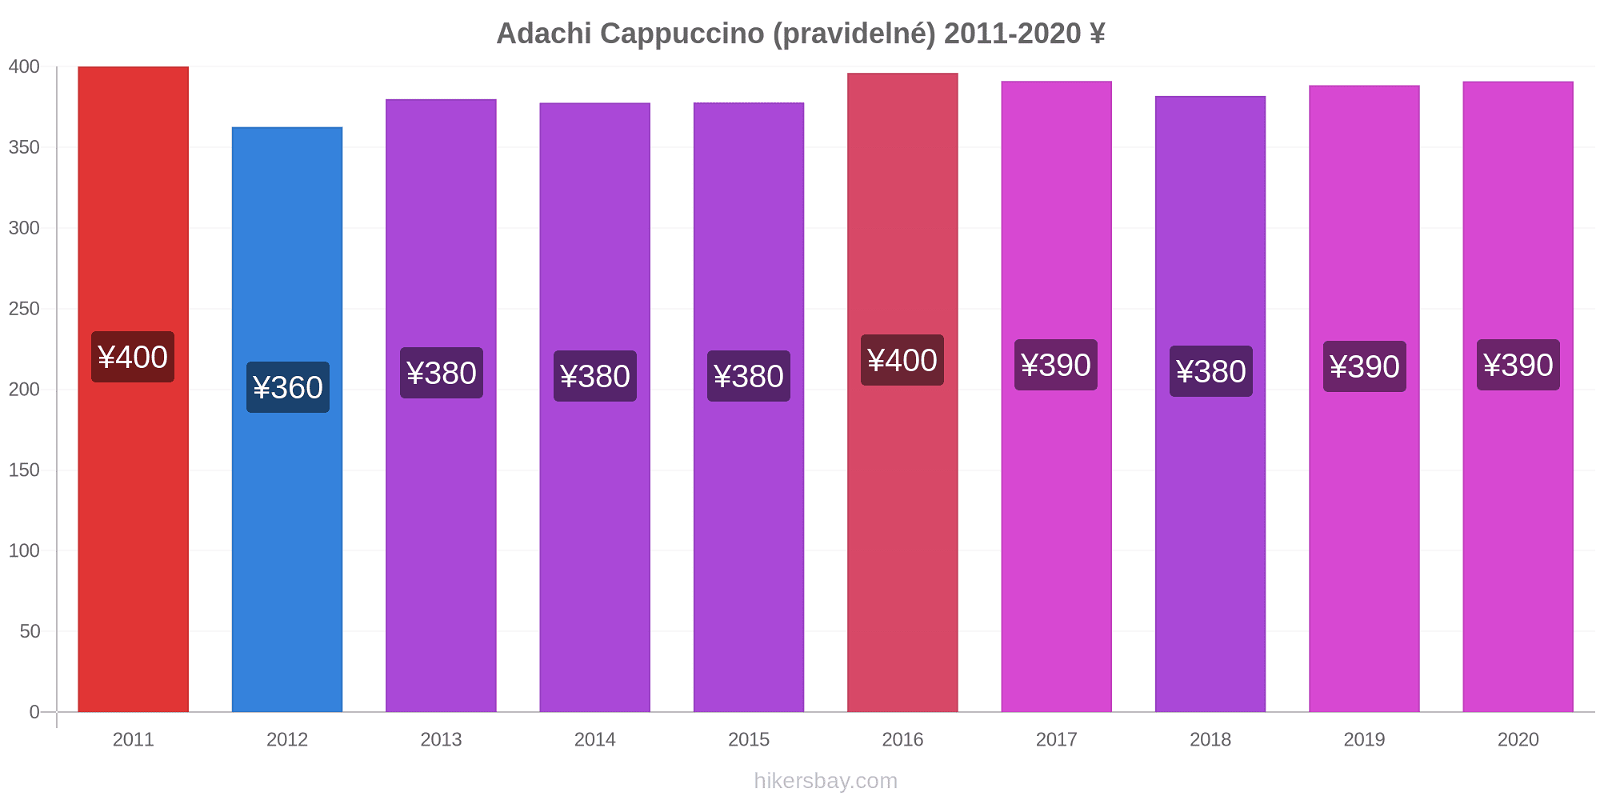 Adachi změny cen Cappuccino (pravidelné) hikersbay.com